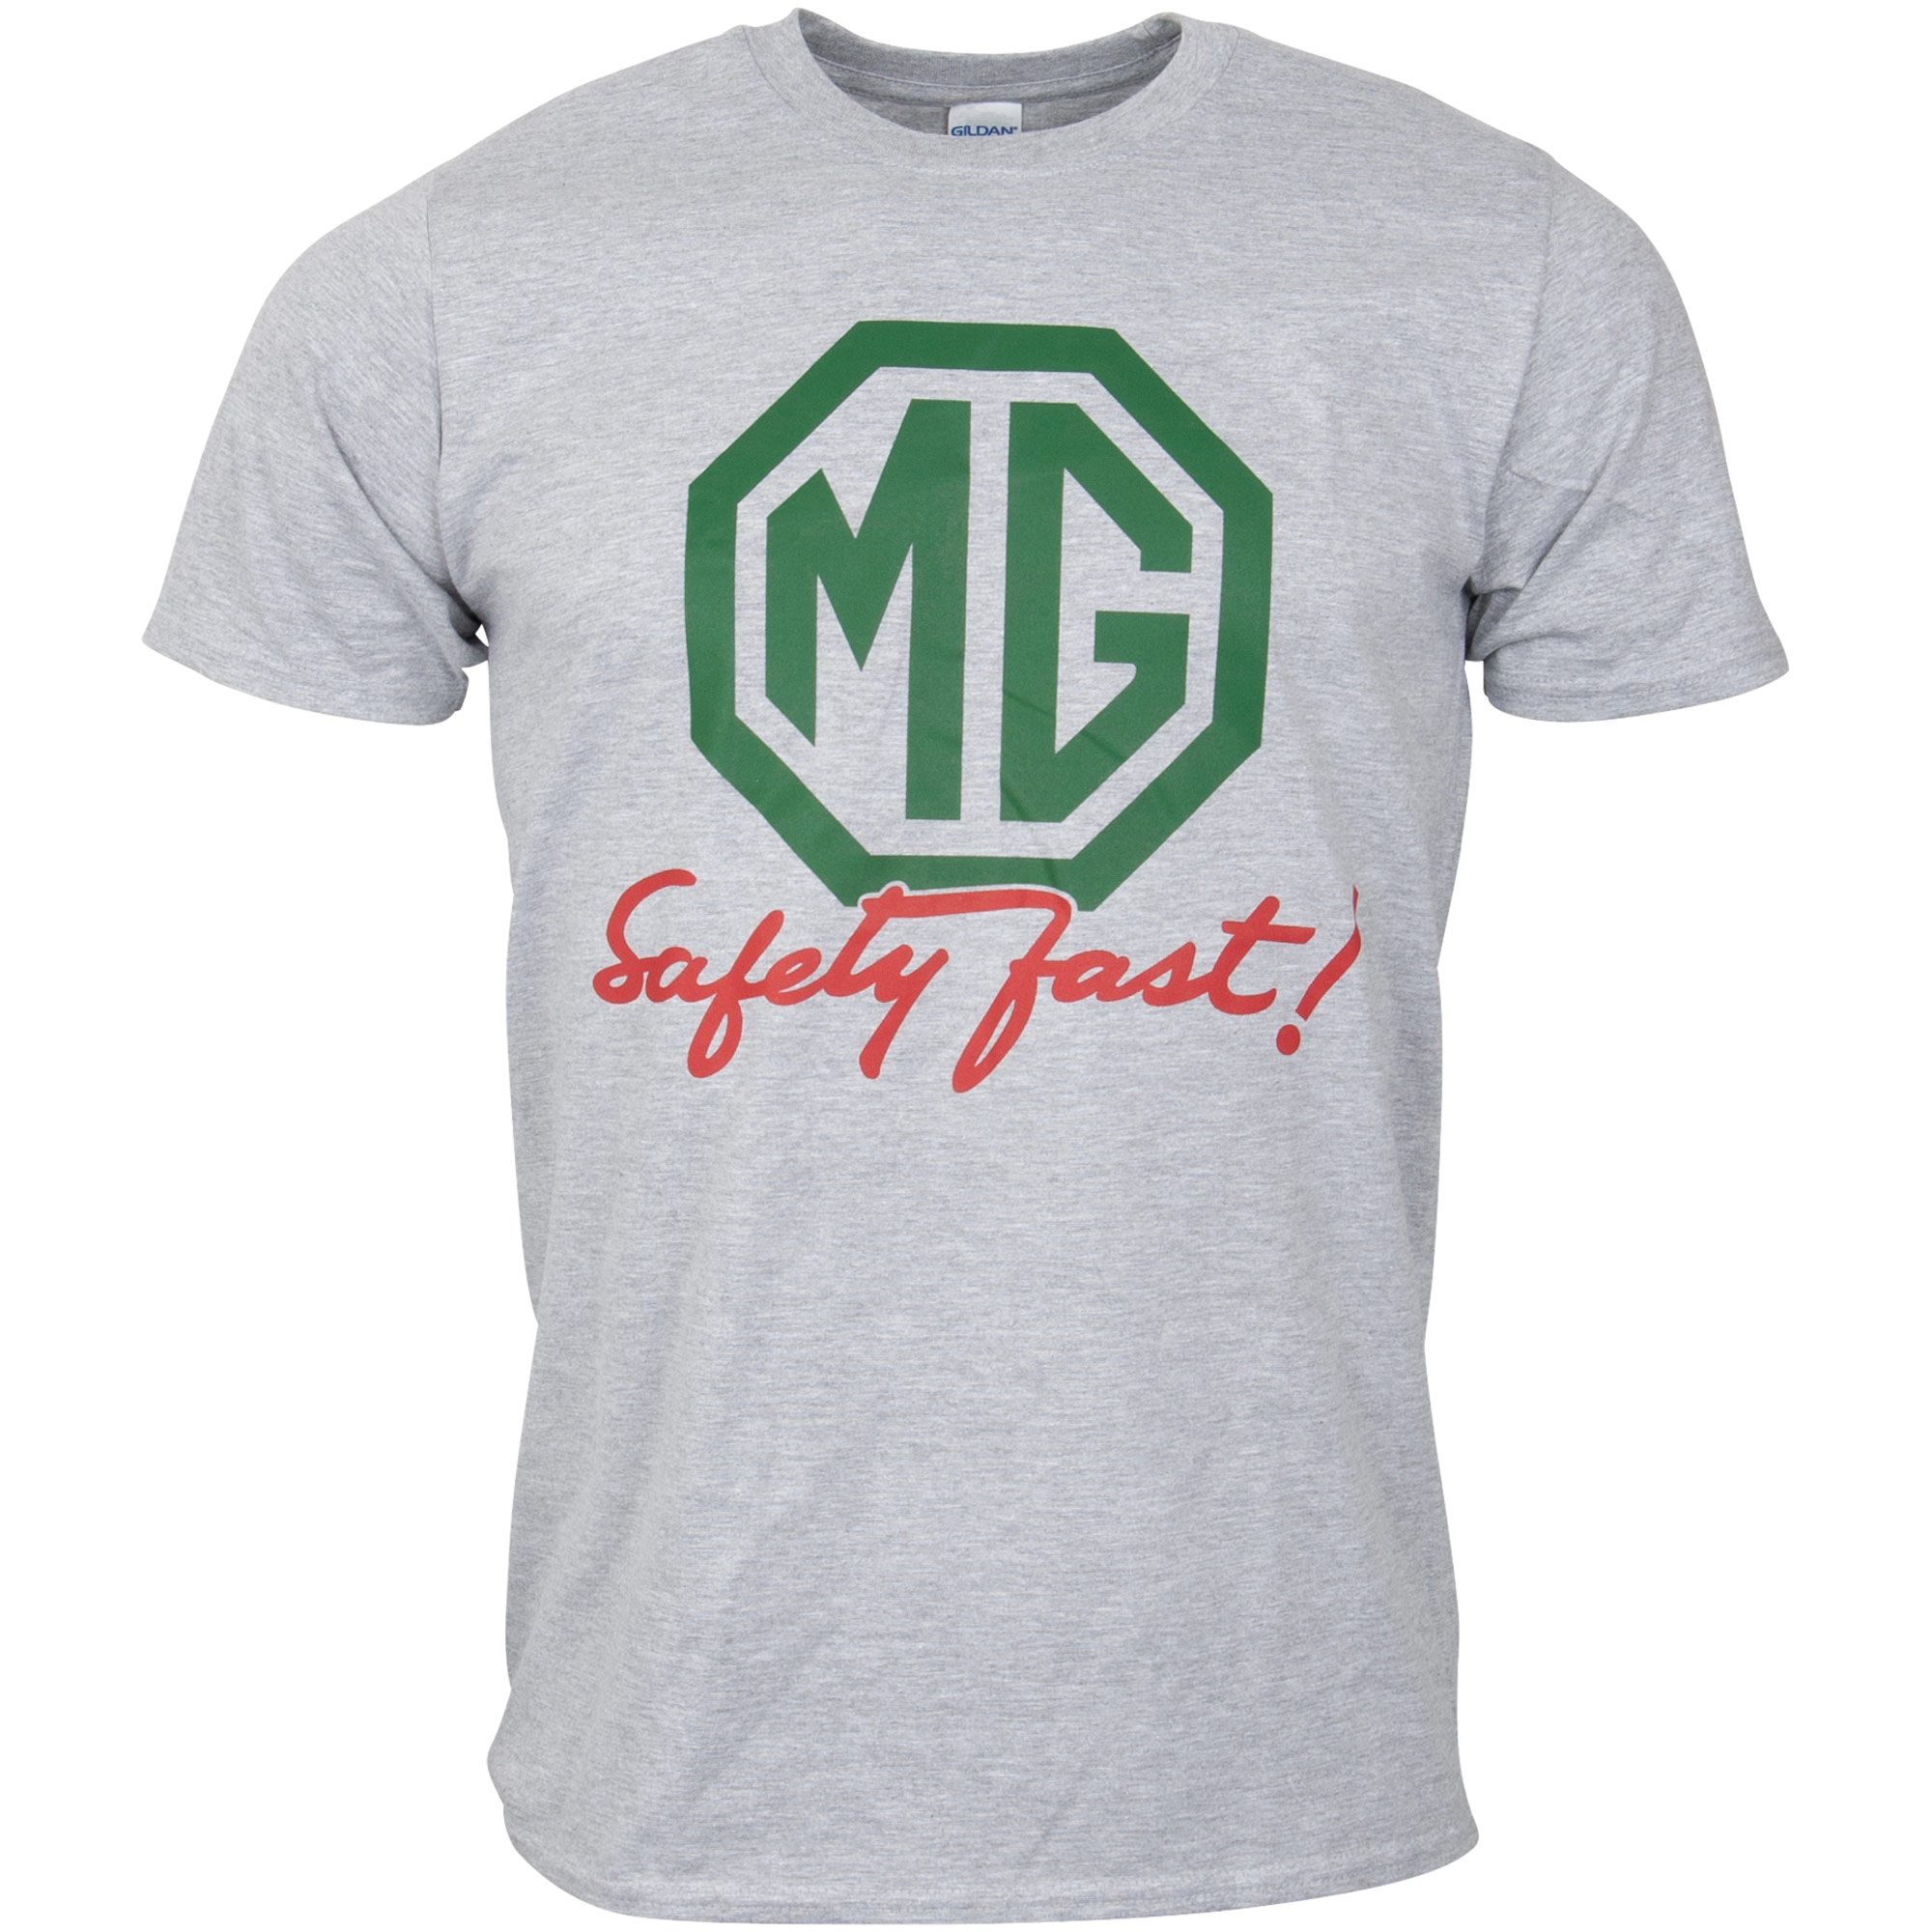 MG T-Shirt "Safely Fast" - grau